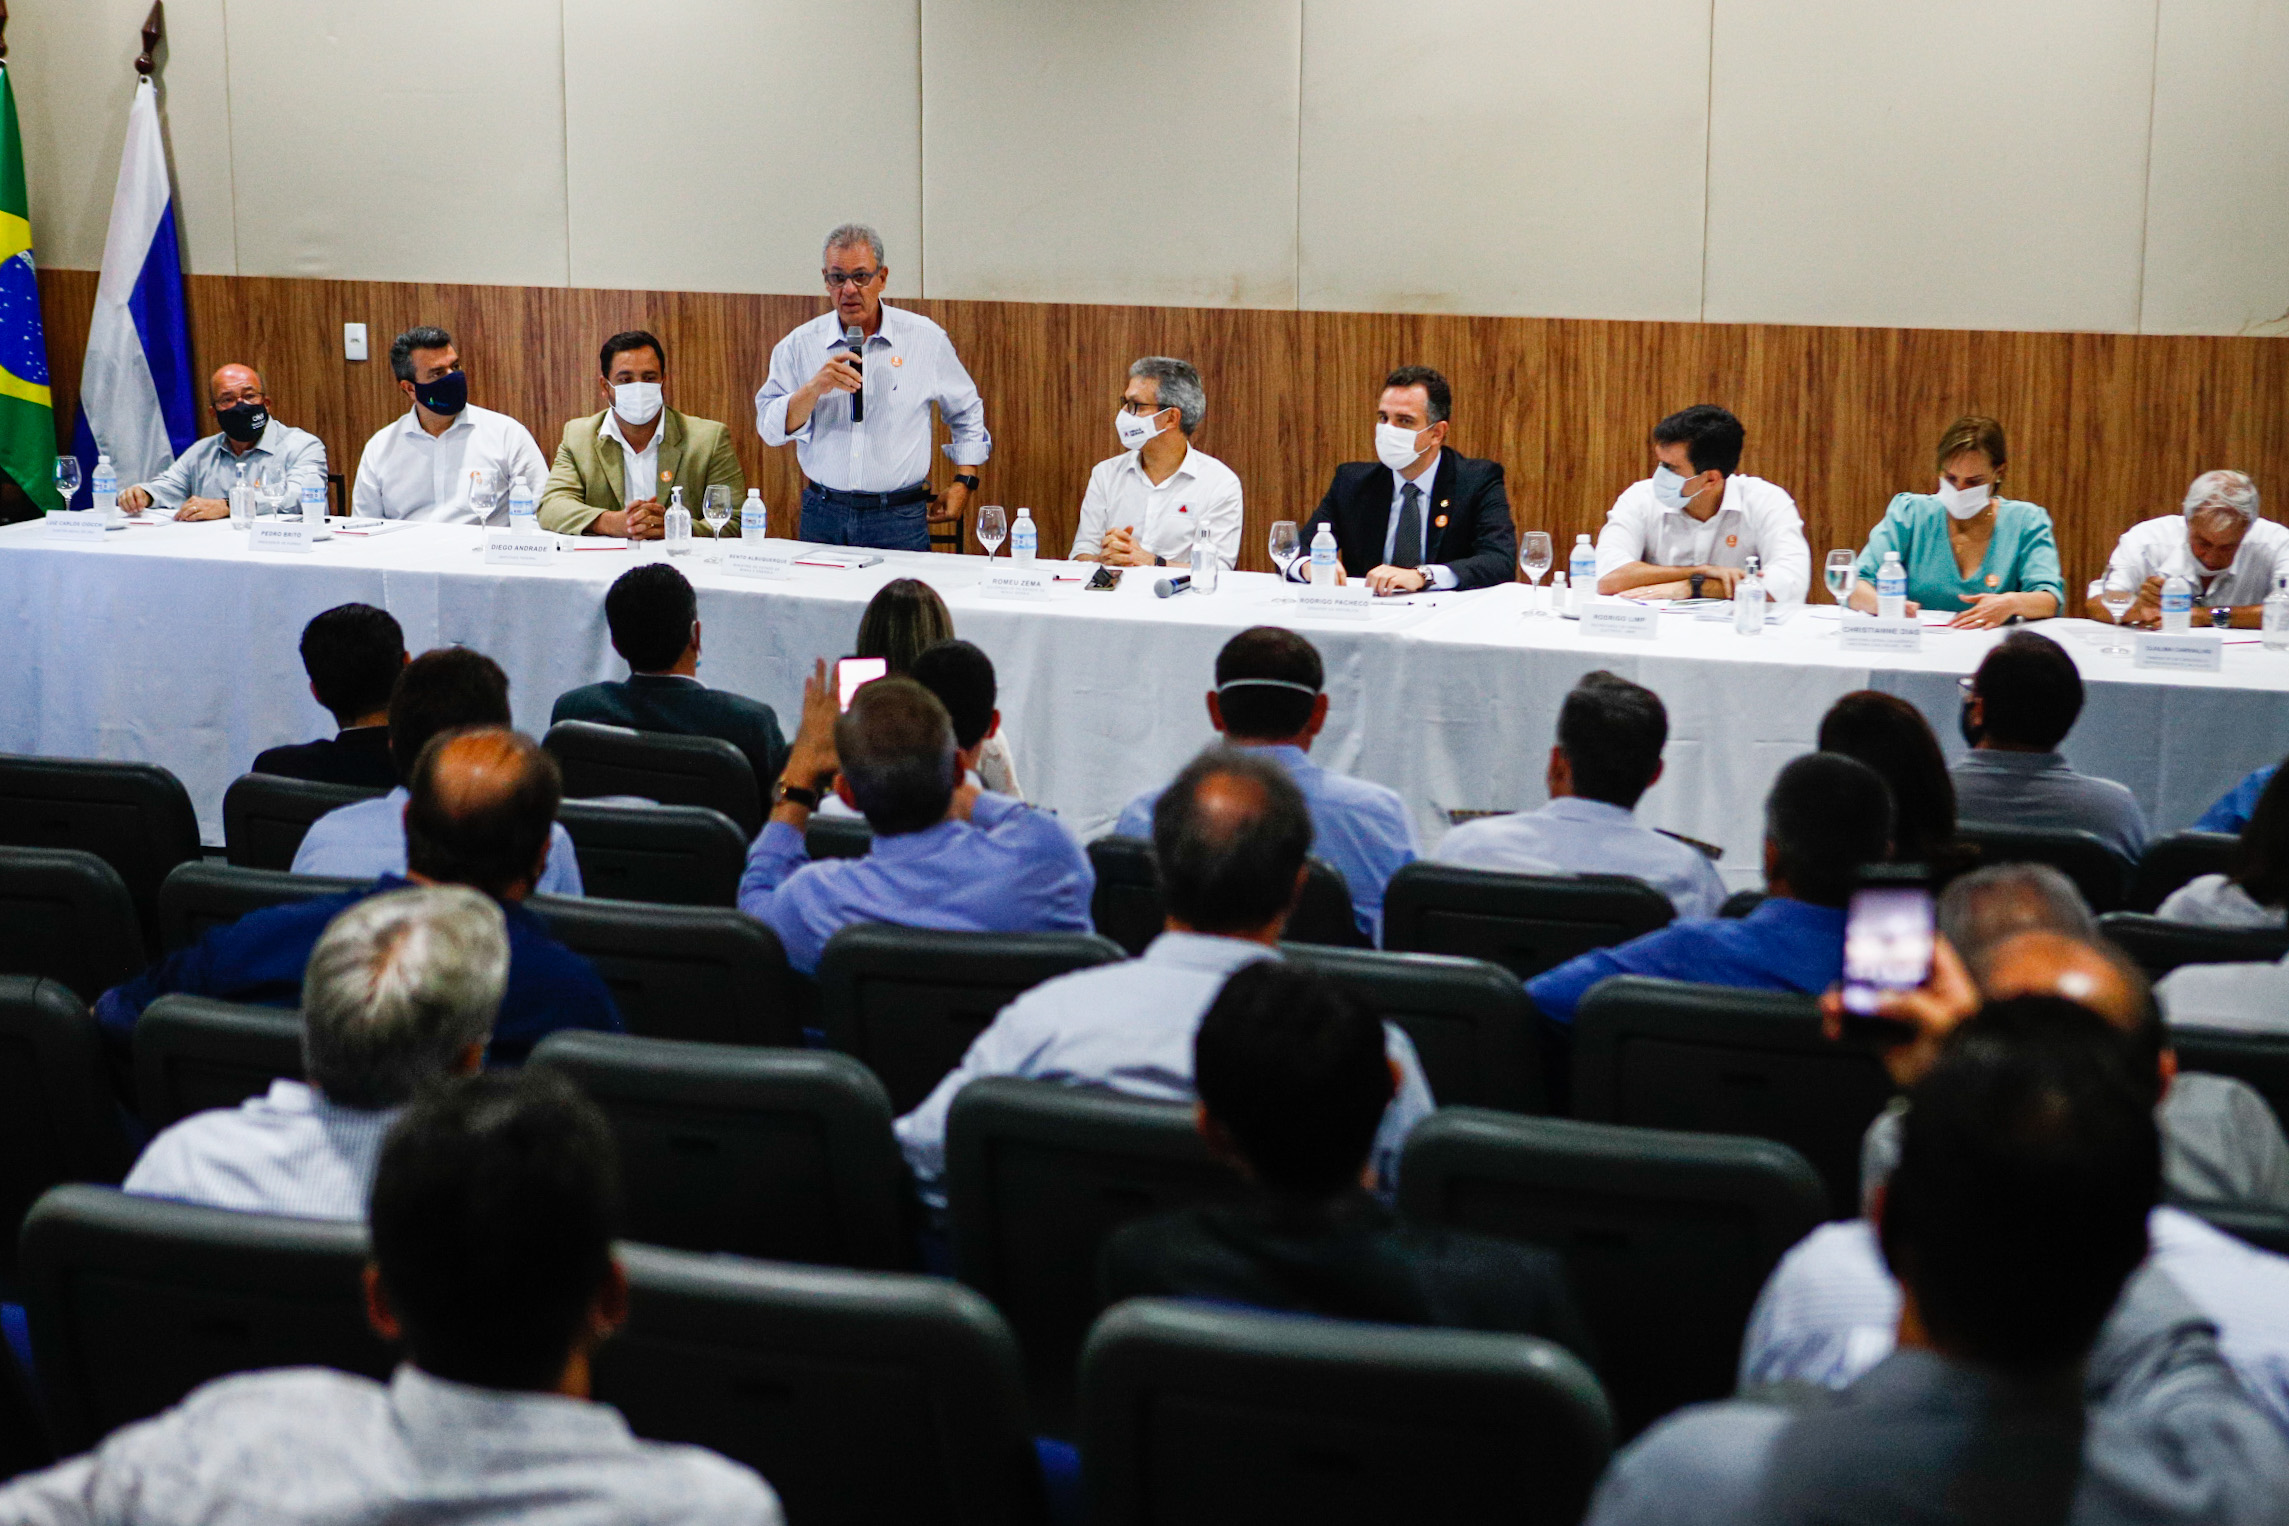 Ministro de Minas e Energia participa de reunião com prefeitos da região de Furnas em MG